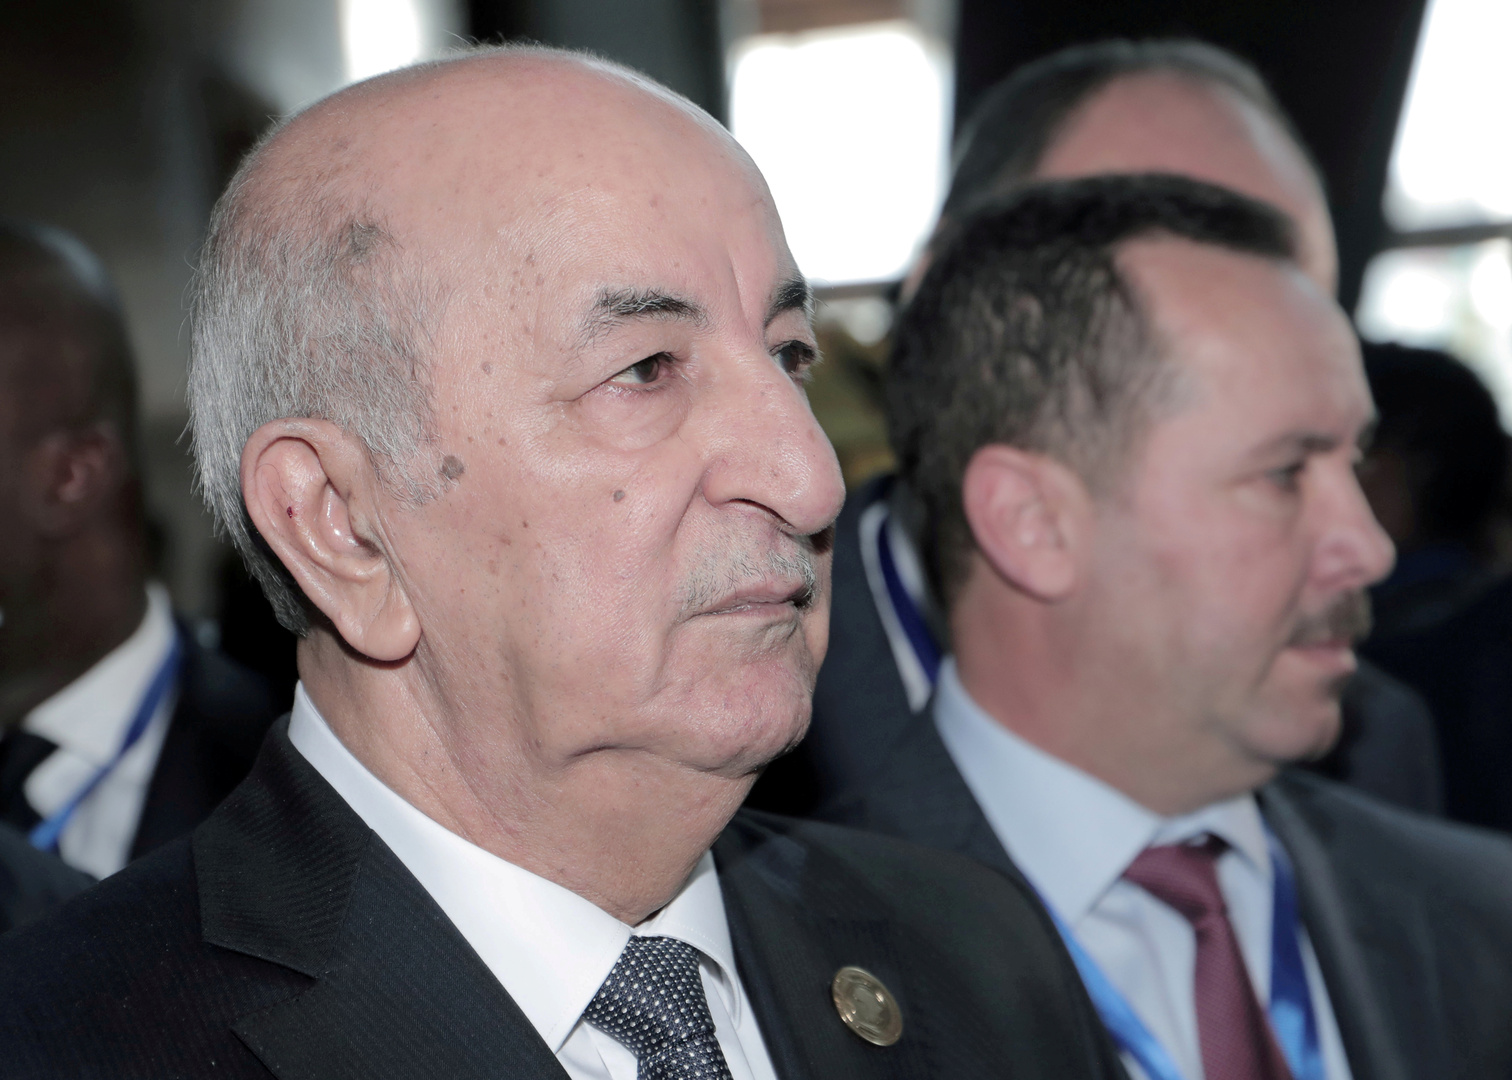 ولدا بقلبين ملتصقين.. الرئيس الجزائري يتكفل بمصاريف فصل توأمين في تركيا